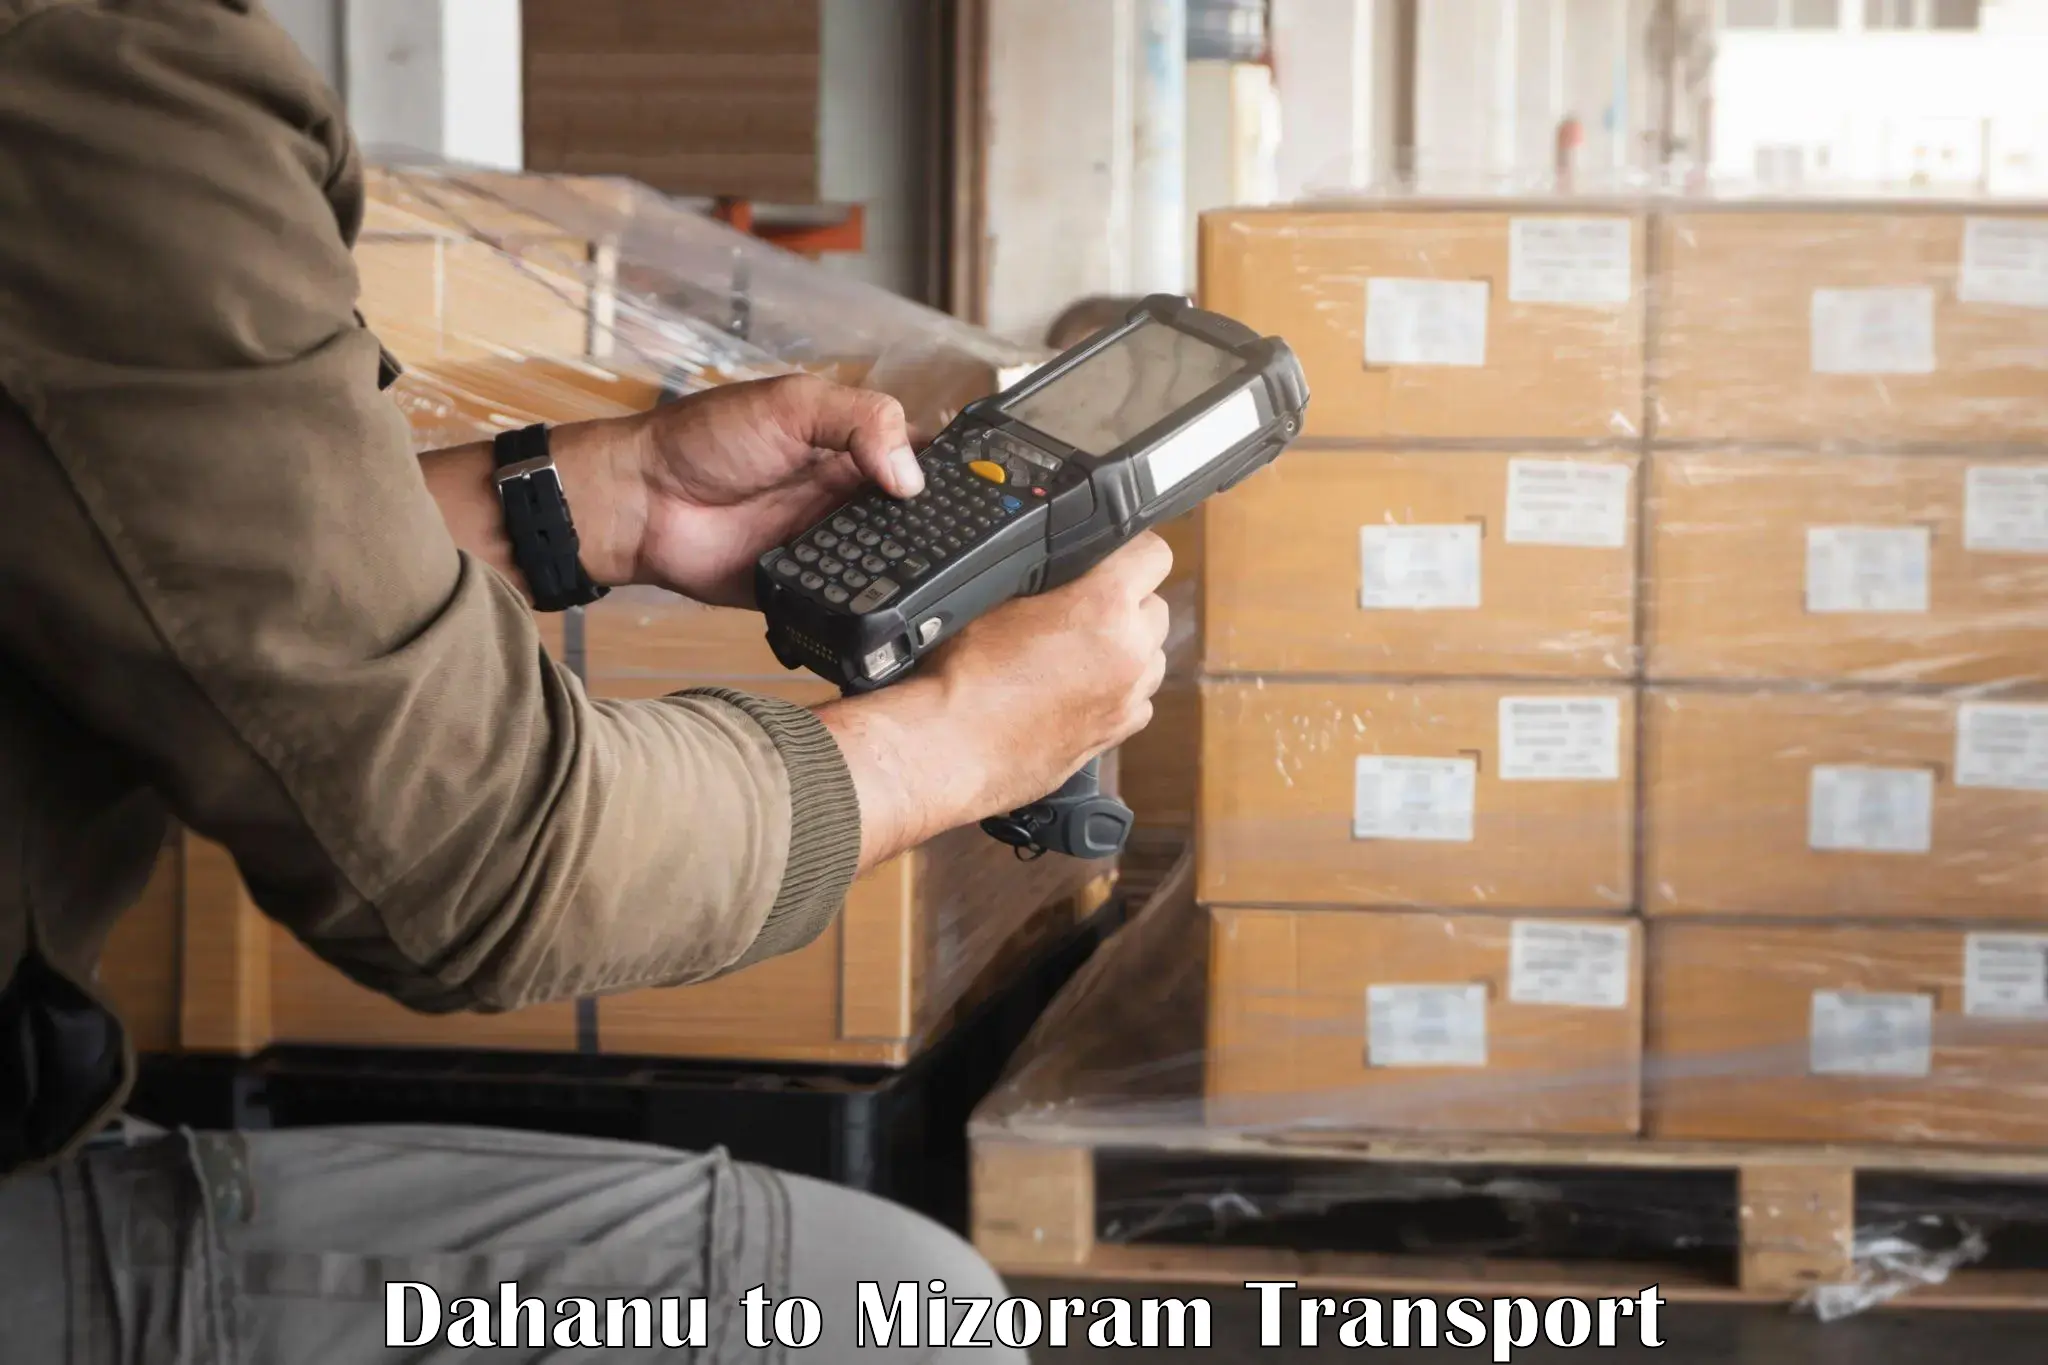 Air freight transport services Dahanu to Kolasib